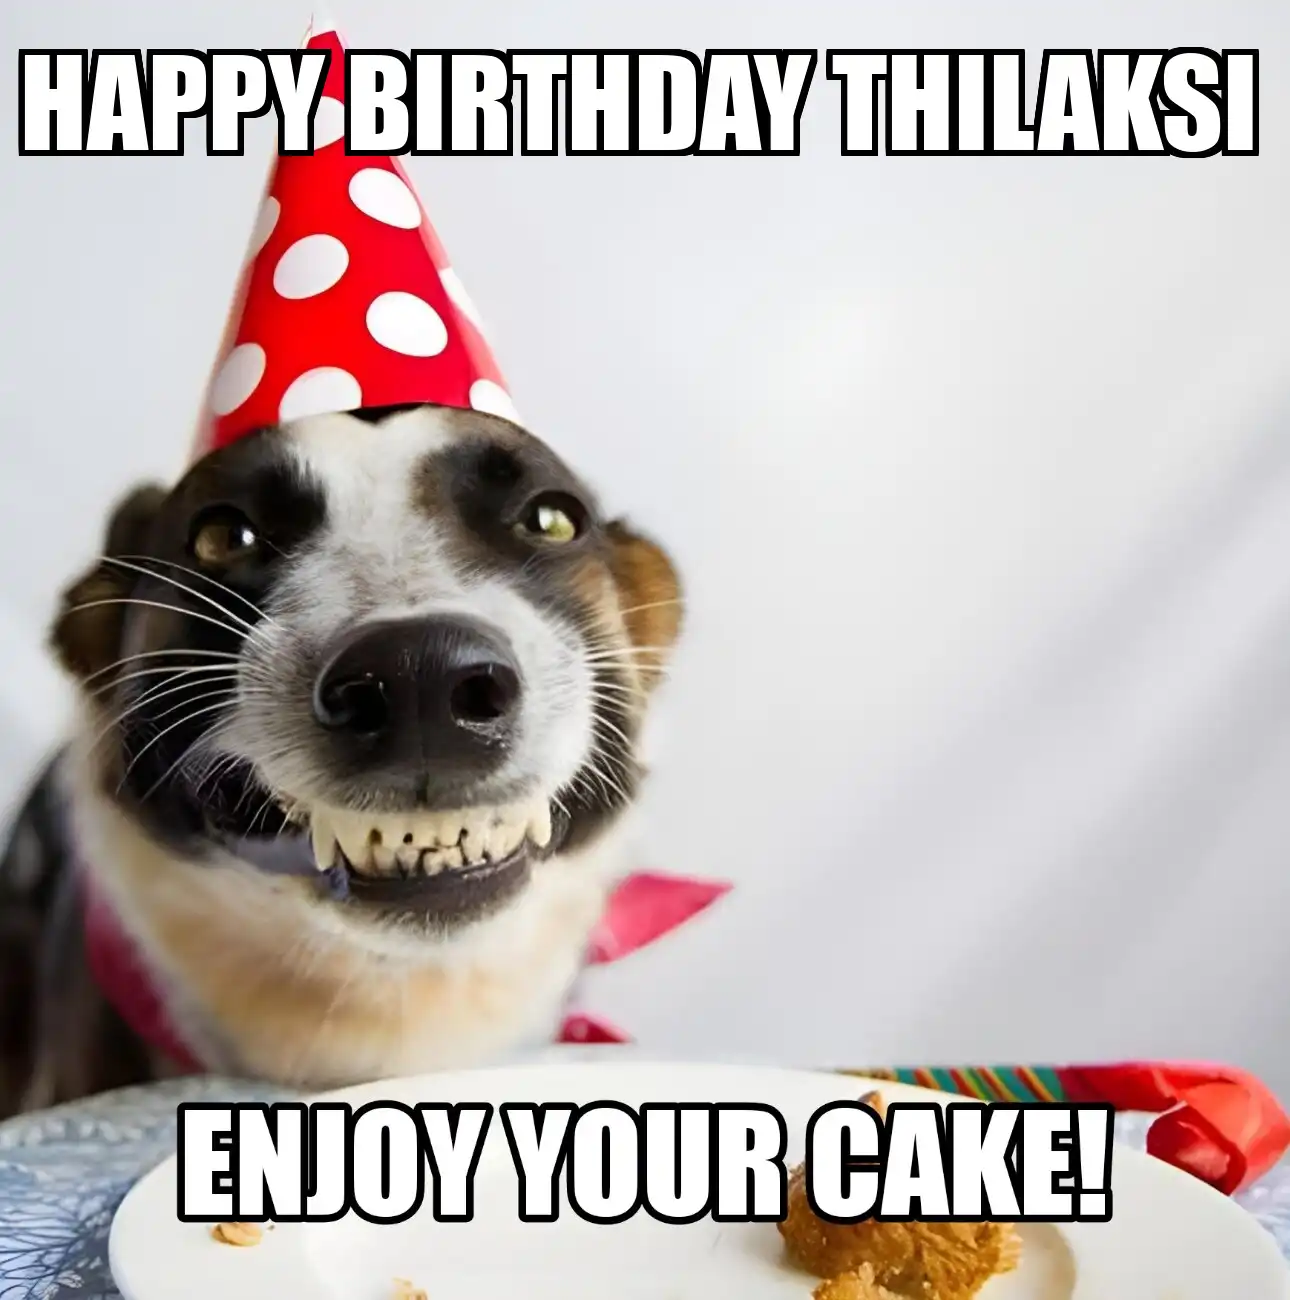 Happy Birthday Thilaksi Enjoy Your Cake Dog Meme